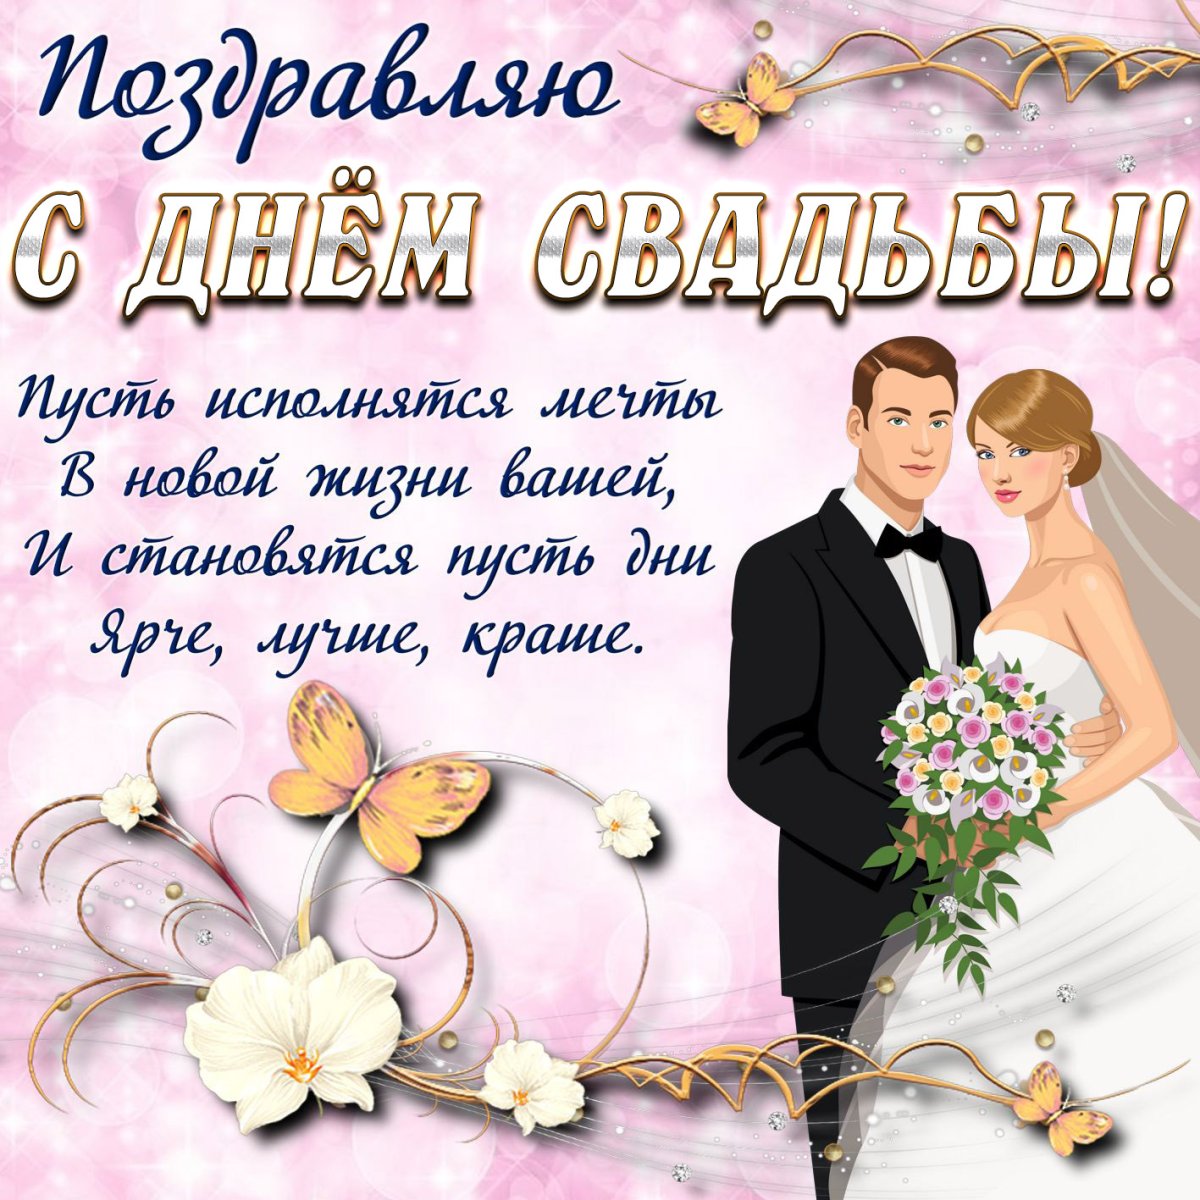 Поздравление пожелание на свадьбу молодоженам